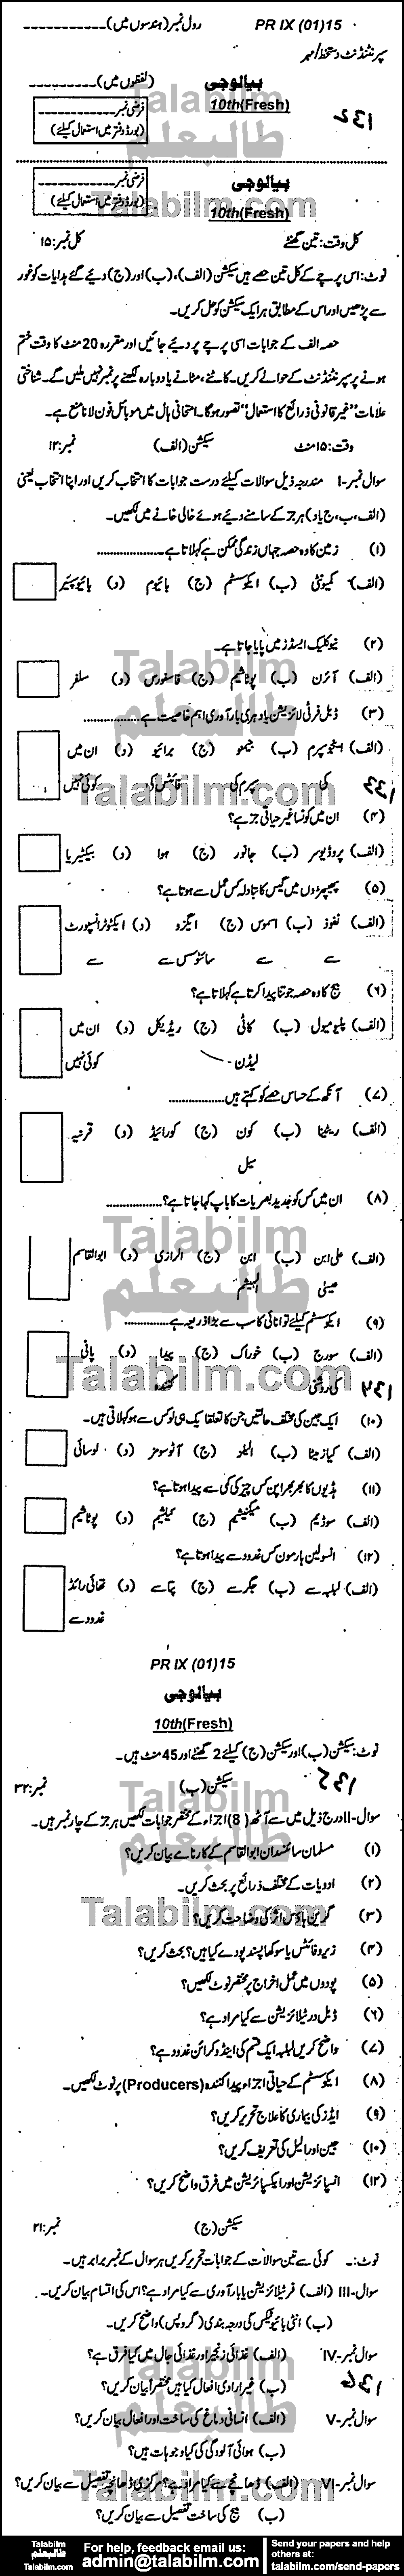 Biology 0 past paper for Urdu Medium 2015 Group-I